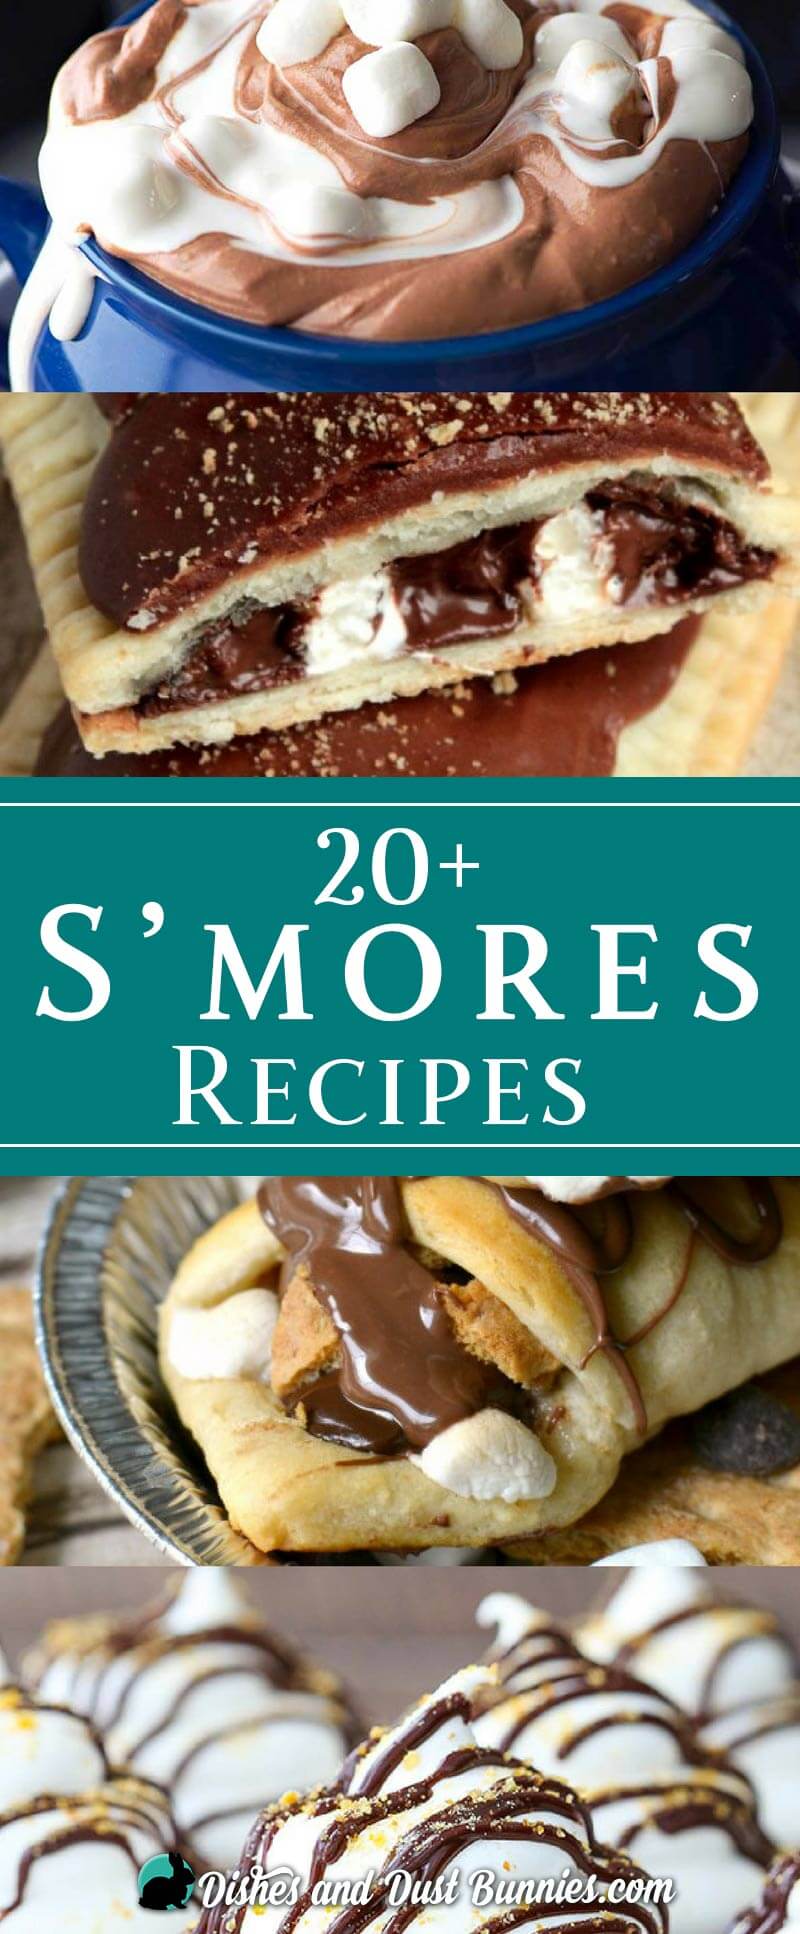 S'mores Recipes - dishesanddustbunnies.com